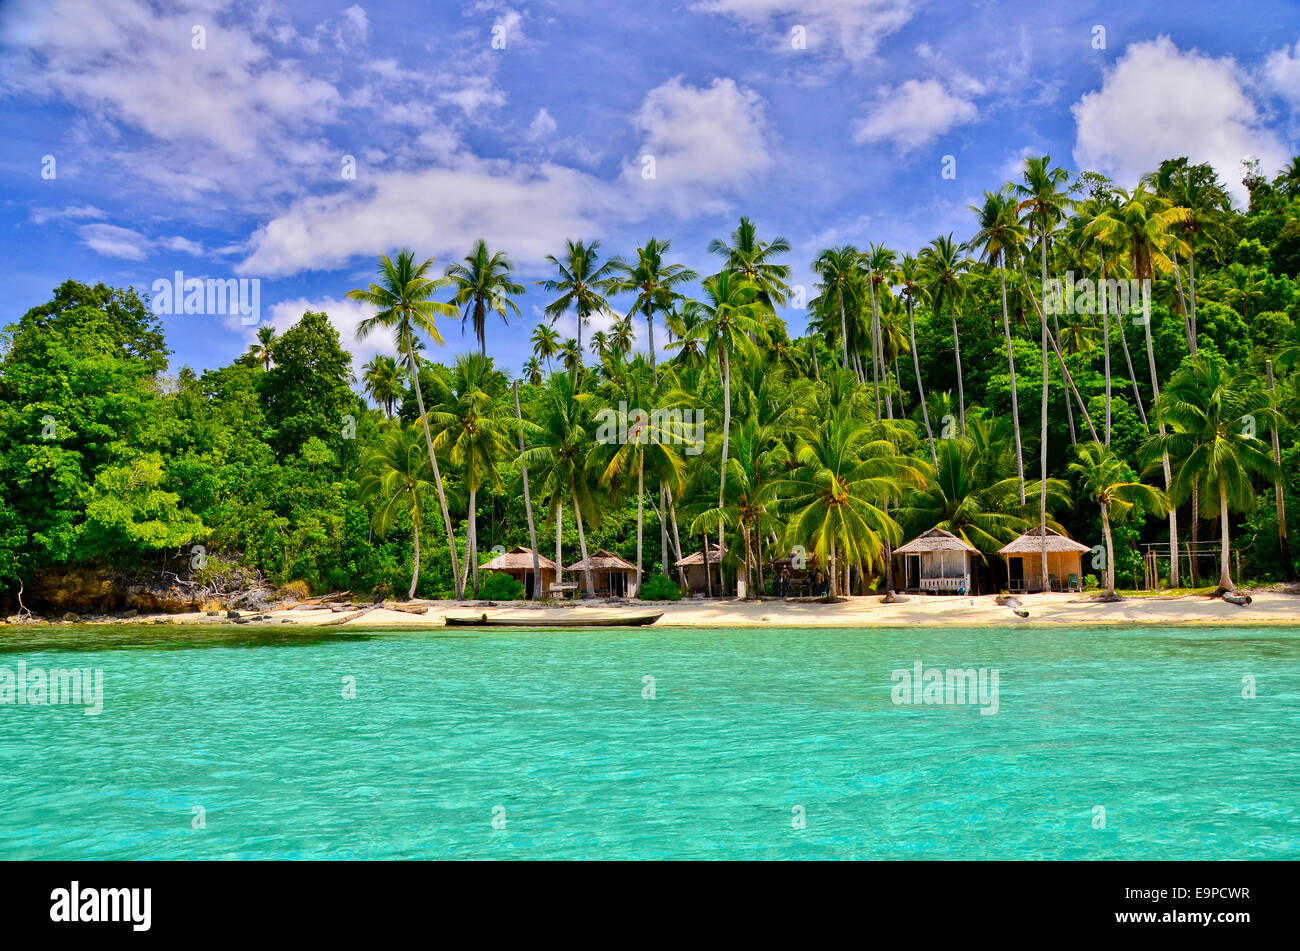 Sulawesi island immagini e fotografie stock ad alta risoluzione - Alamy